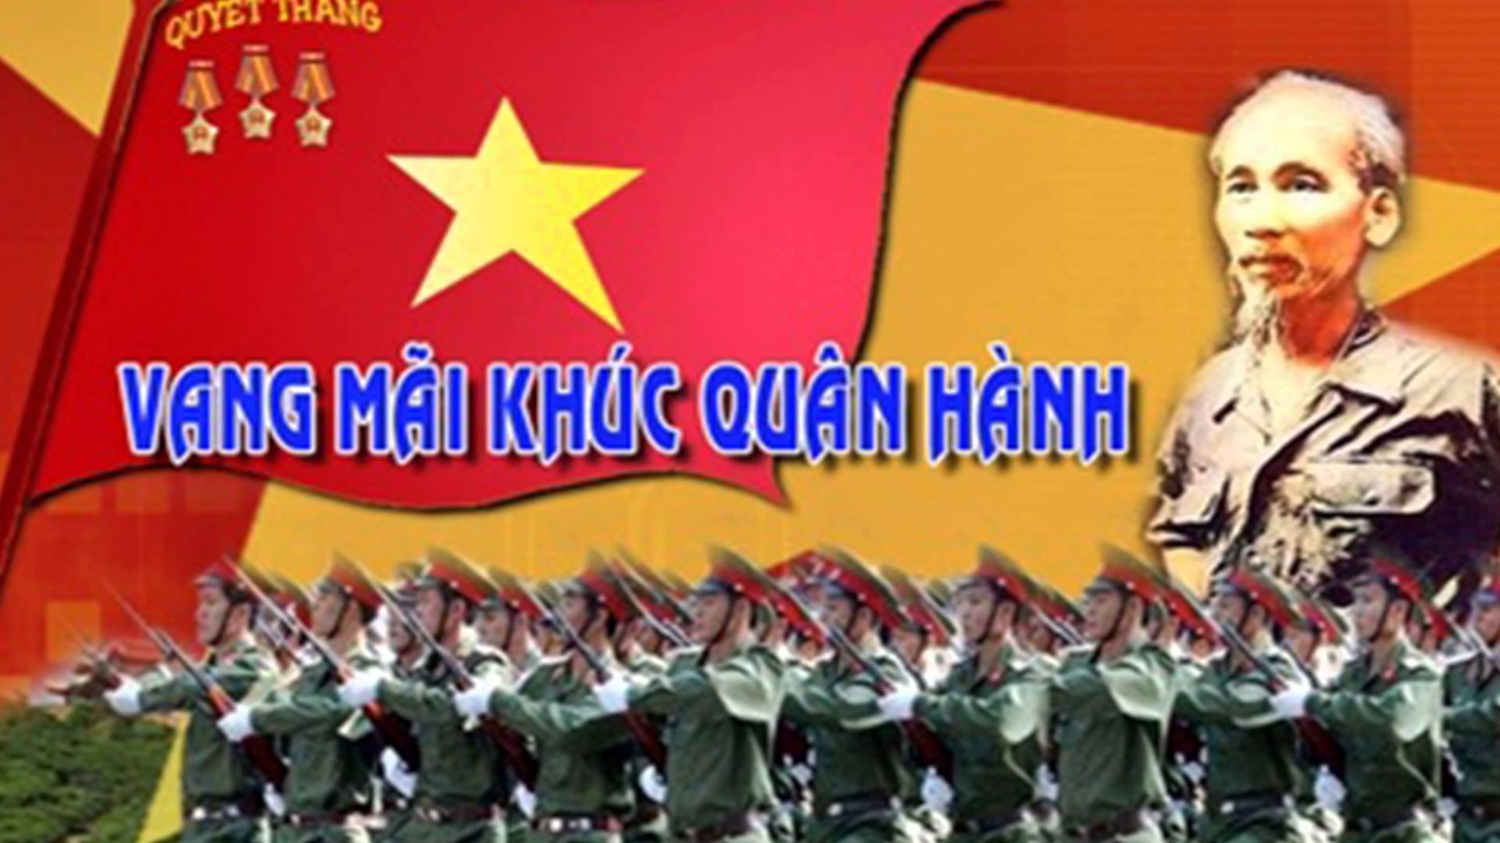 Quân đội nhân dân Việt Nam - 75 năm chiến đầu và trưởng thành